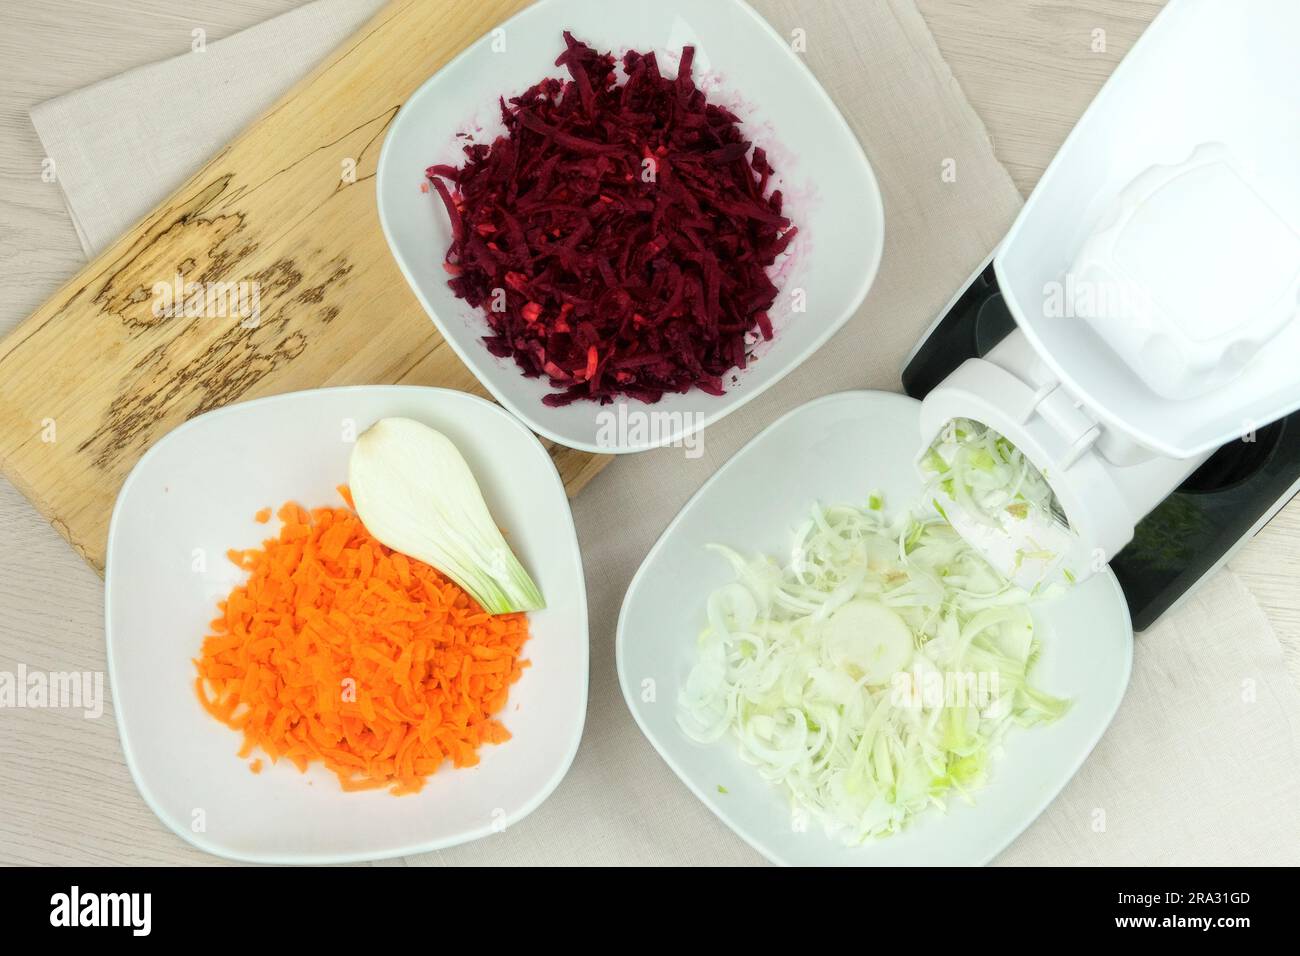 Karotten, Rüben und Zwiebeln in einem Gemüseschneider auf dem Küchentisch. Gehacktes Gemüse fällt in eine Schüssel. Hausgemachte gesunde Lebensmittel. Stockfoto